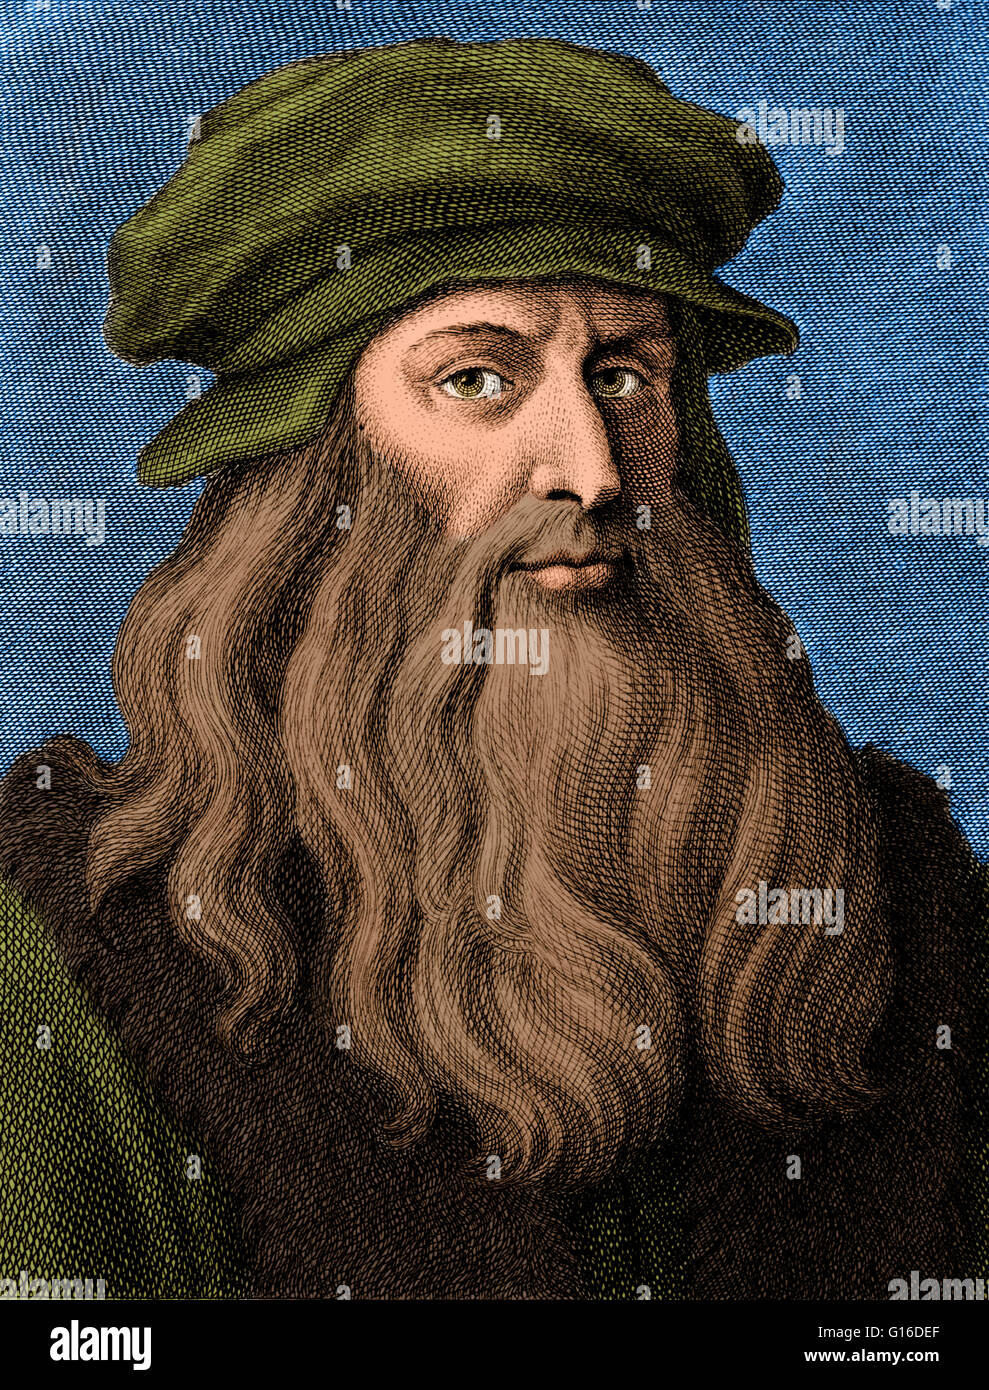 Leonardo di ser Piero da Vinci (15 avril 1452 - 2 mai 1519) était un mathématicien italien de la Renaissance : peintre, sculpteur, architecte, musicien, mathématicien, ingénieur, inventeur, anatomiste et géologue, cartographe, botaniste et écrivain. Son génie, peut-être mor Banque D'Images